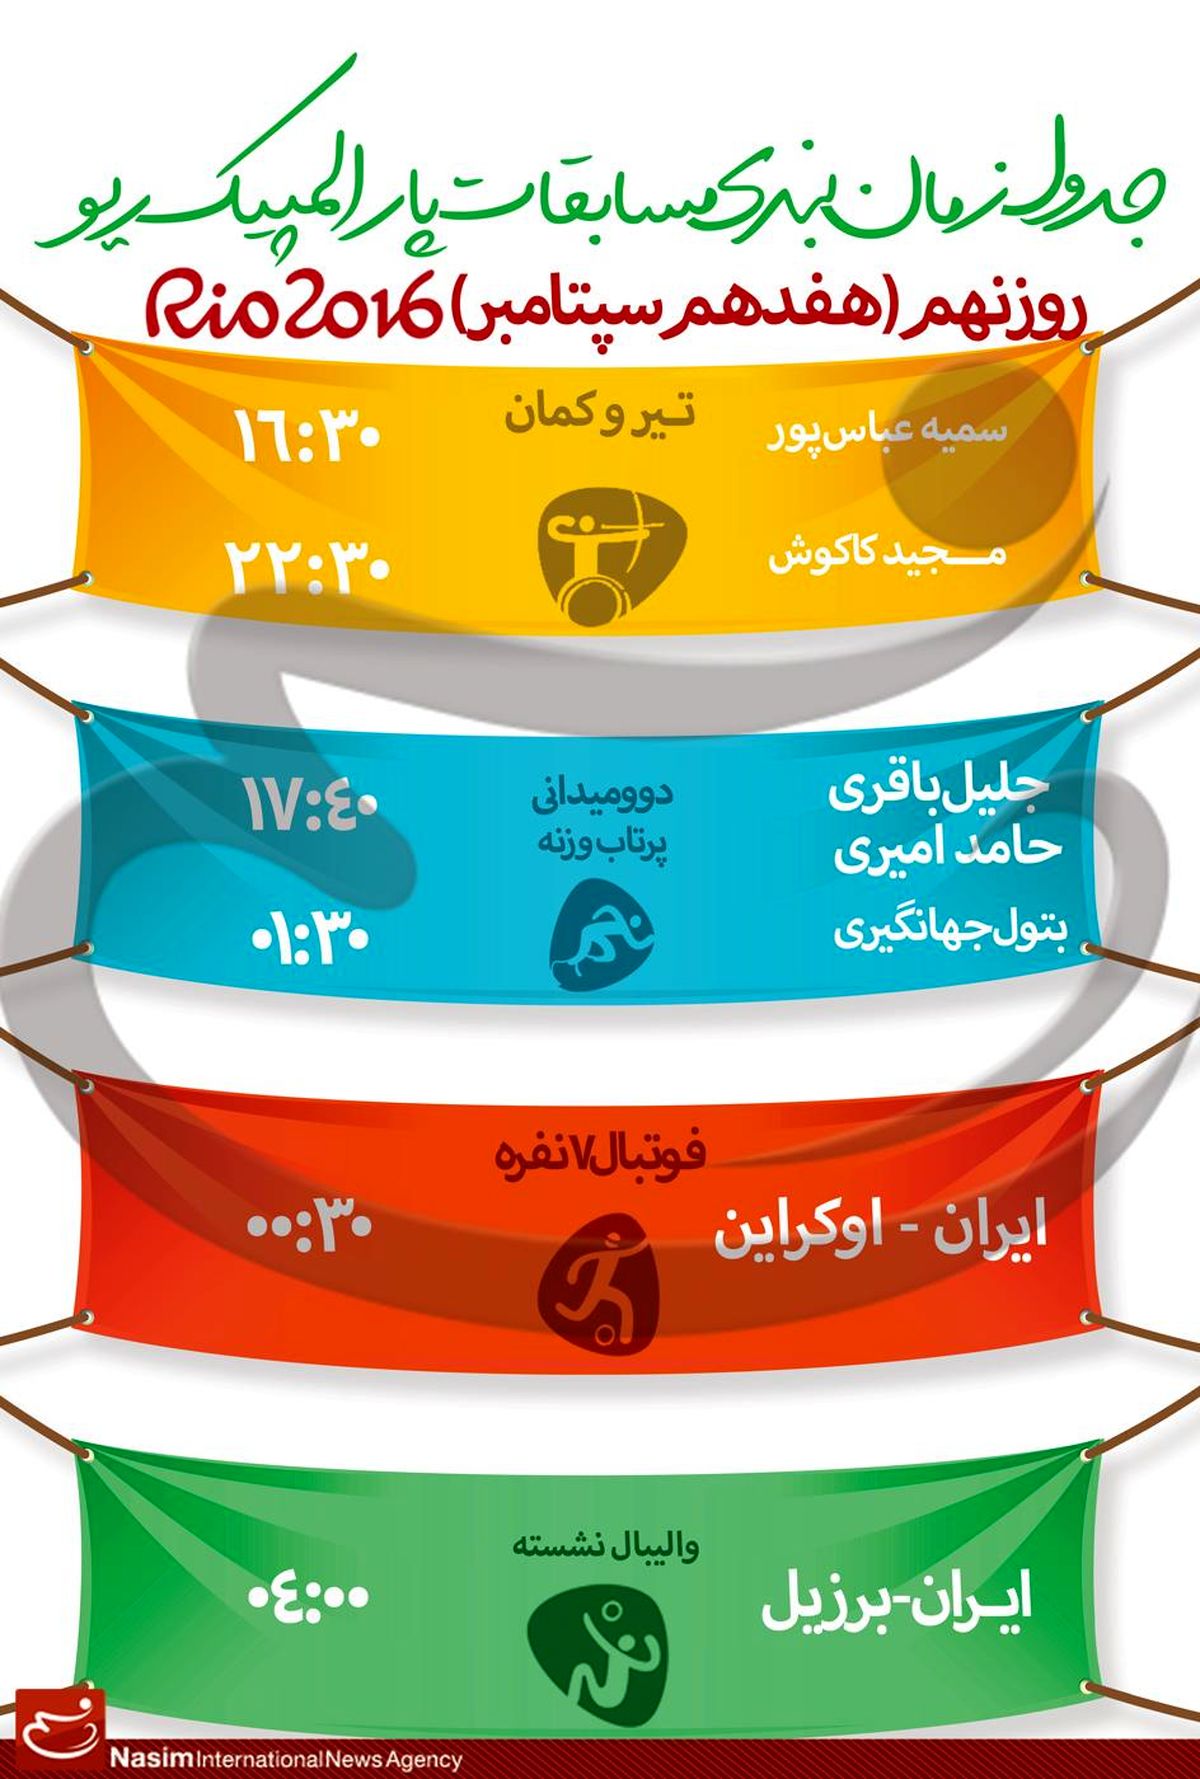 جدول زمانبندی مسابقات نمایندگان ایران در "روز نهم" پارالمپیک ریو